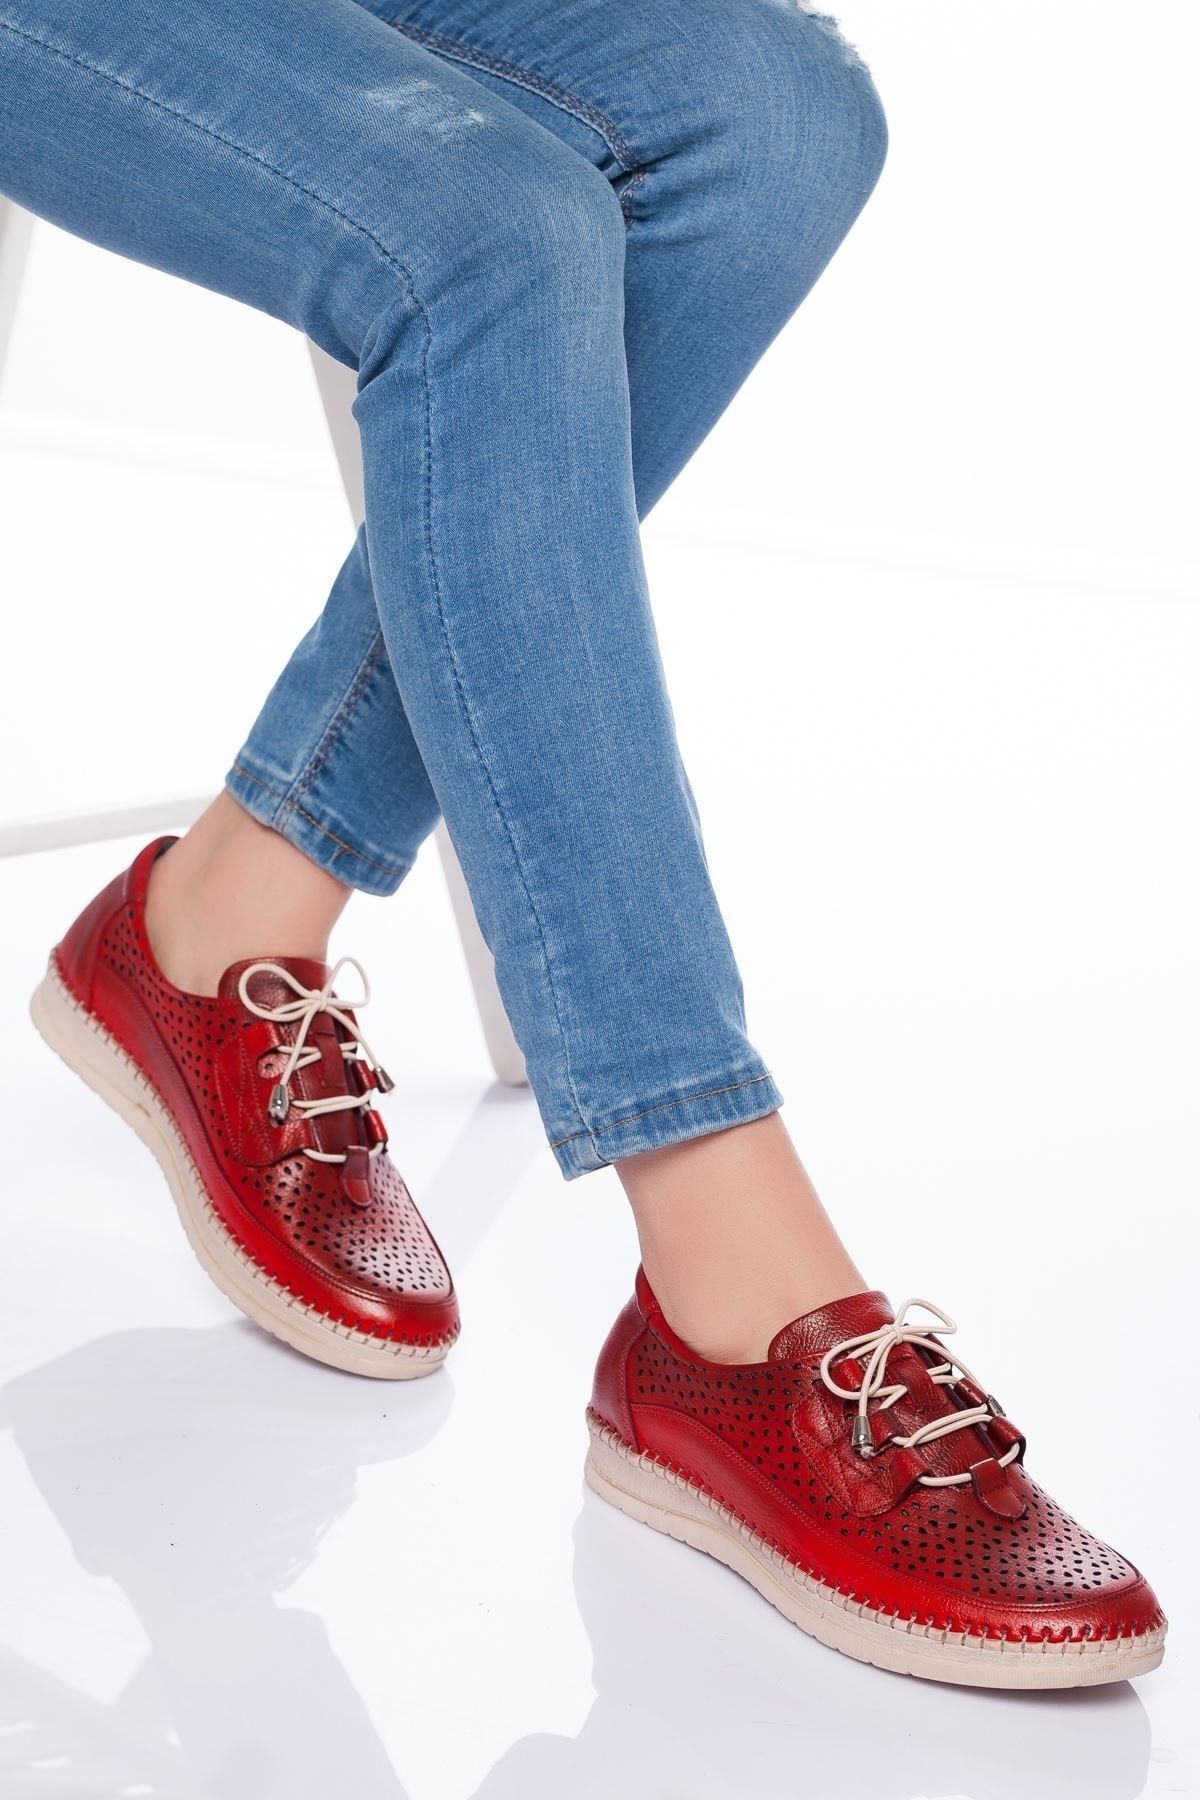 derithy Kadın Kırmızı Hakiki Deri Casual Ayakkabı